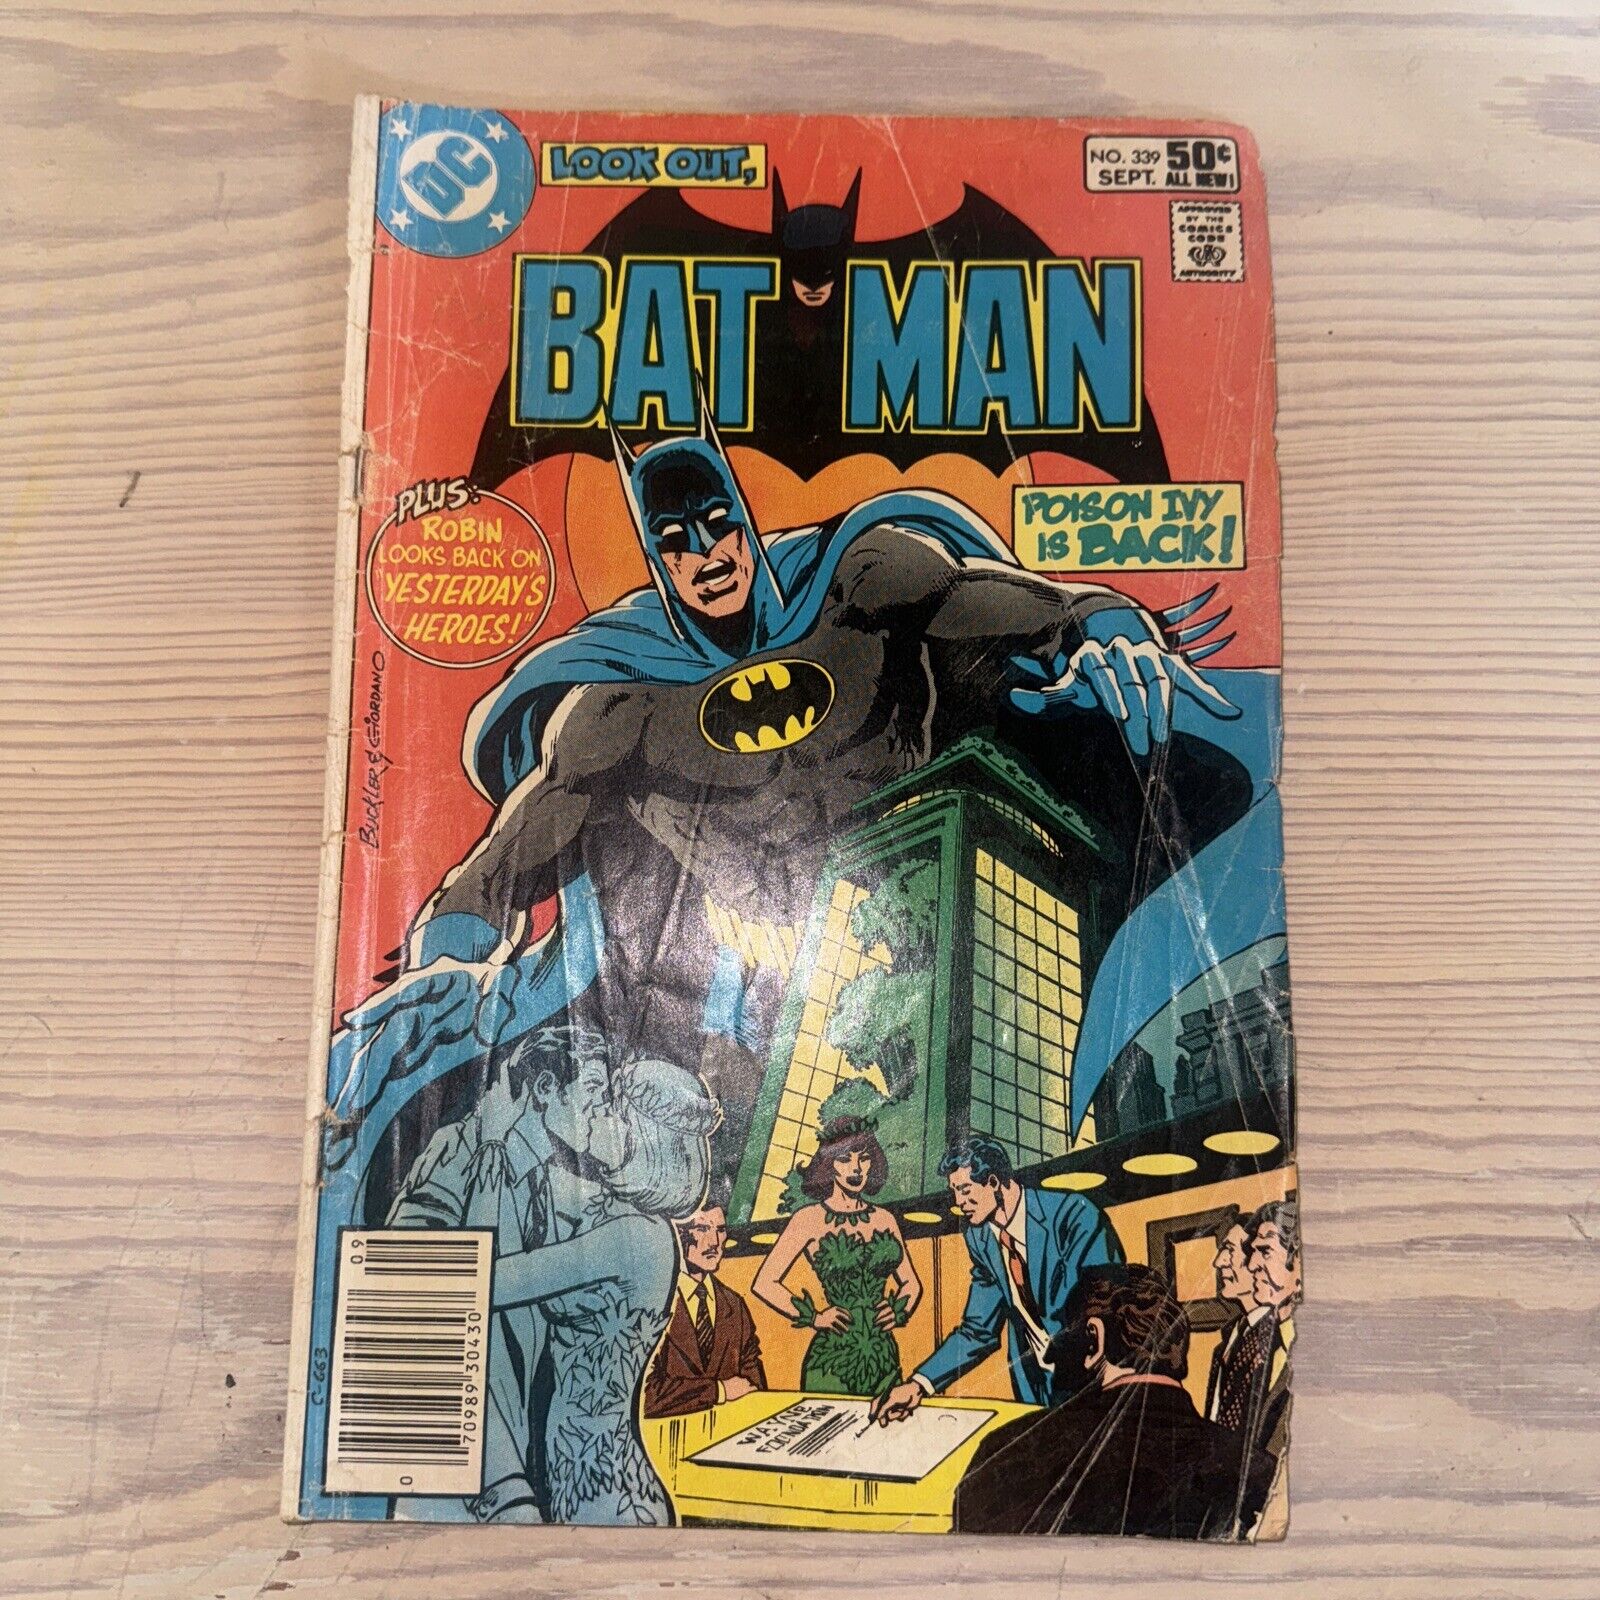 Batman #339 - DC Comics - 1981 - Back Issue